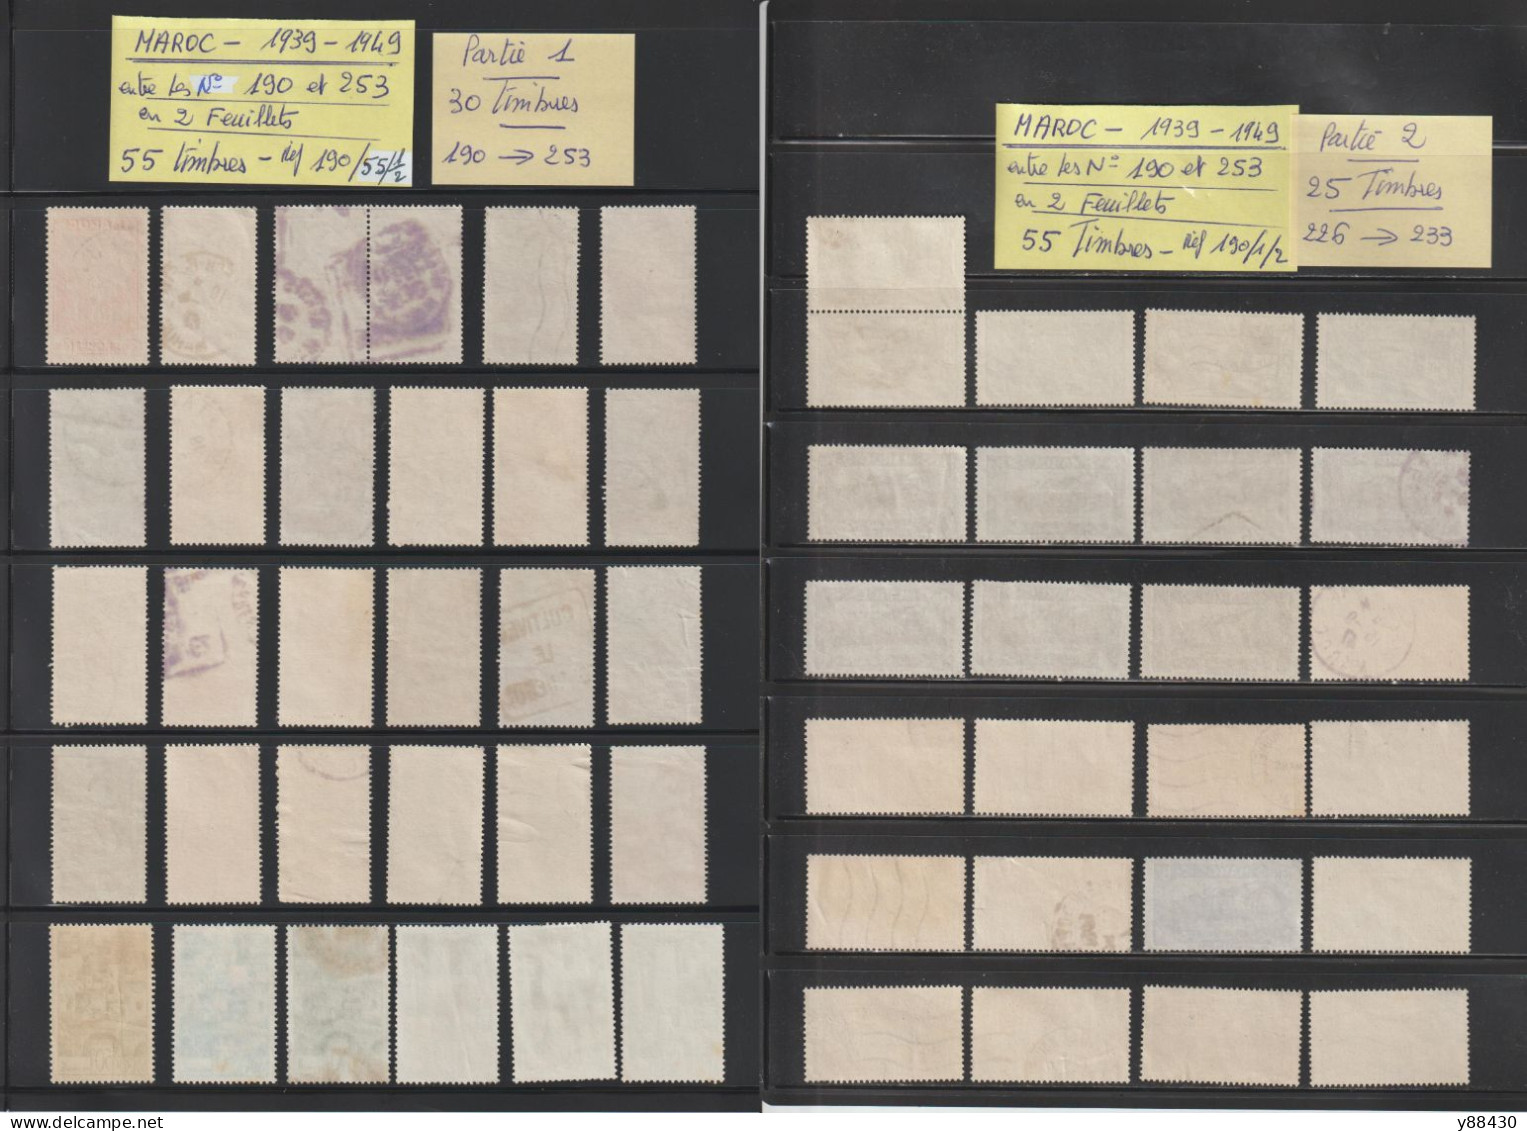 MAROC - Ex. Colonie -  Entre Les N° 190 Et 253  De  1939 à 1949  -  55  Timbres Oblitérés - 6 Scan - Used Stamps